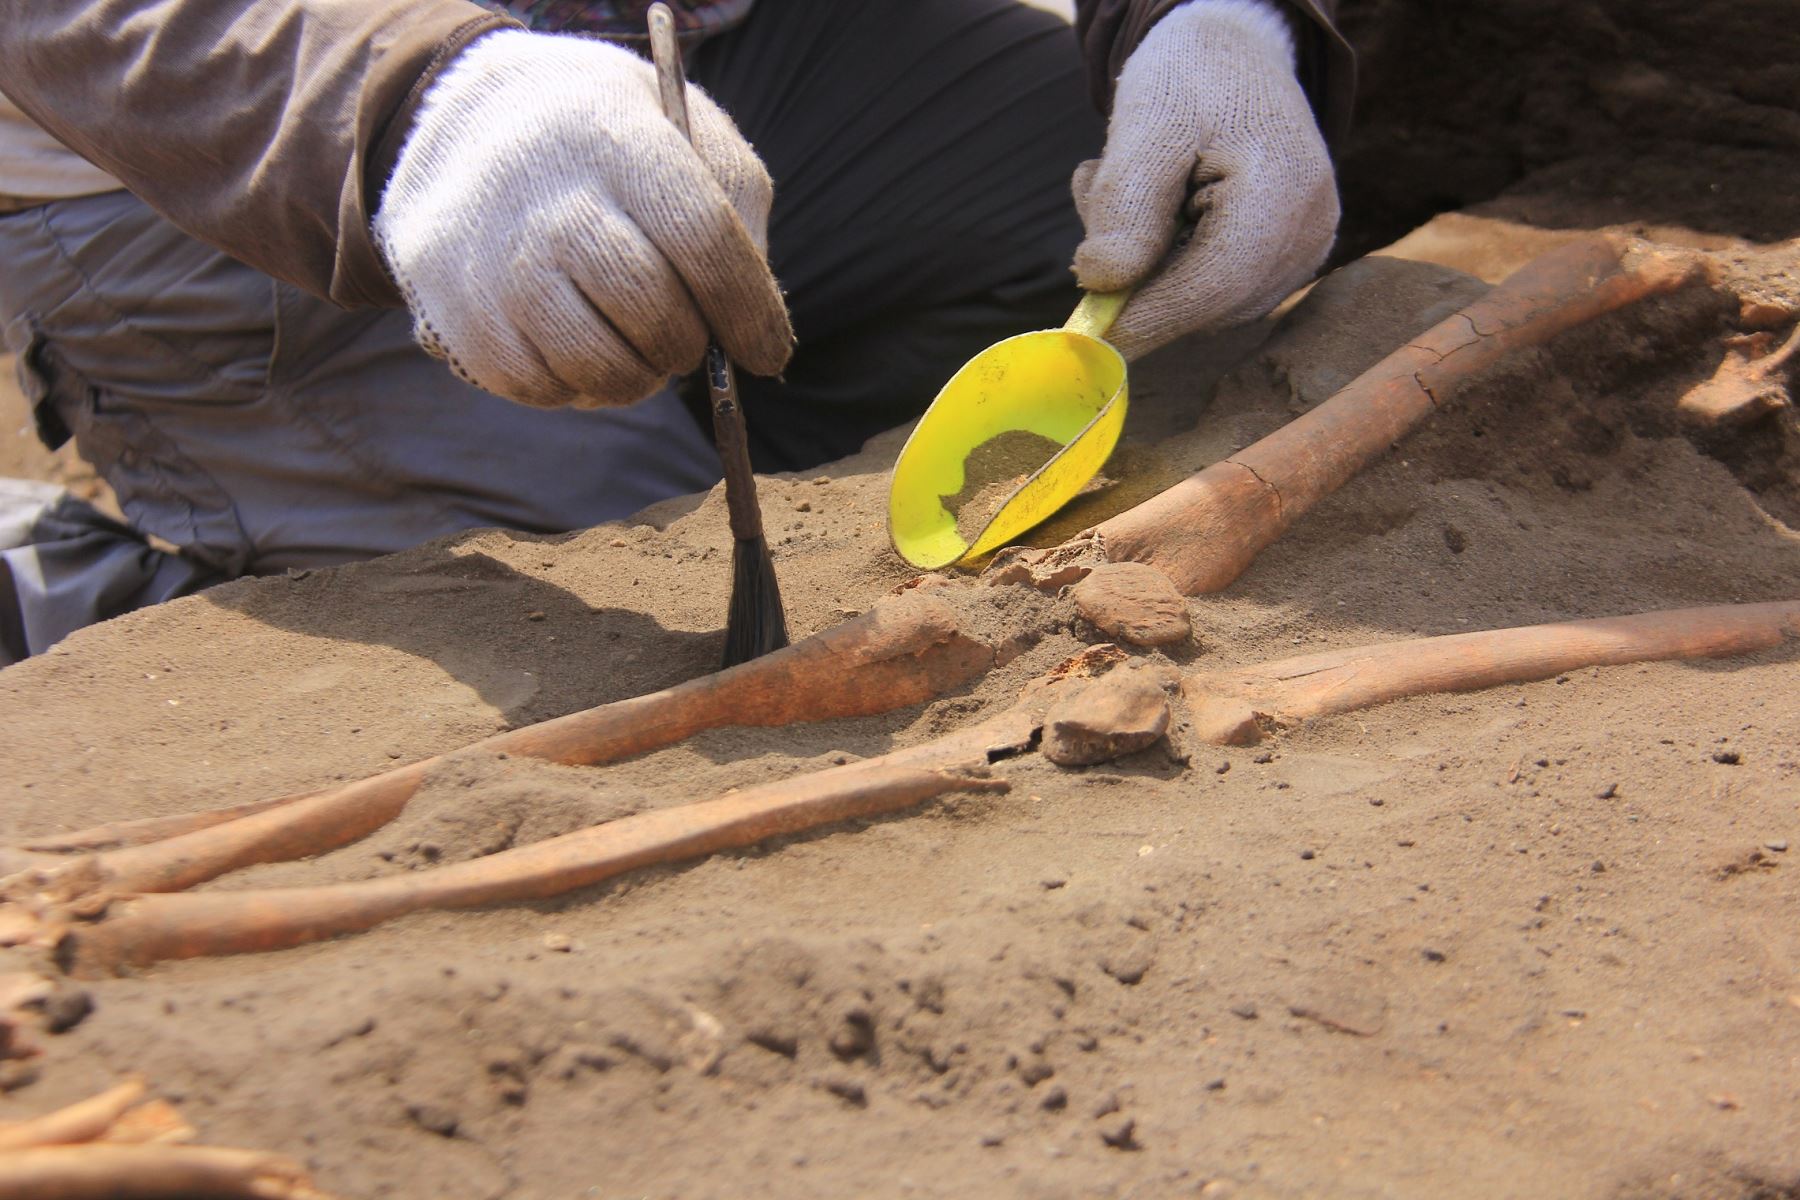 Hallazgo de restos óseos en Huanchaco figura como uno de los más importantes descubrimientos arqueológicos del mundo. ANDINA/Luis Puell